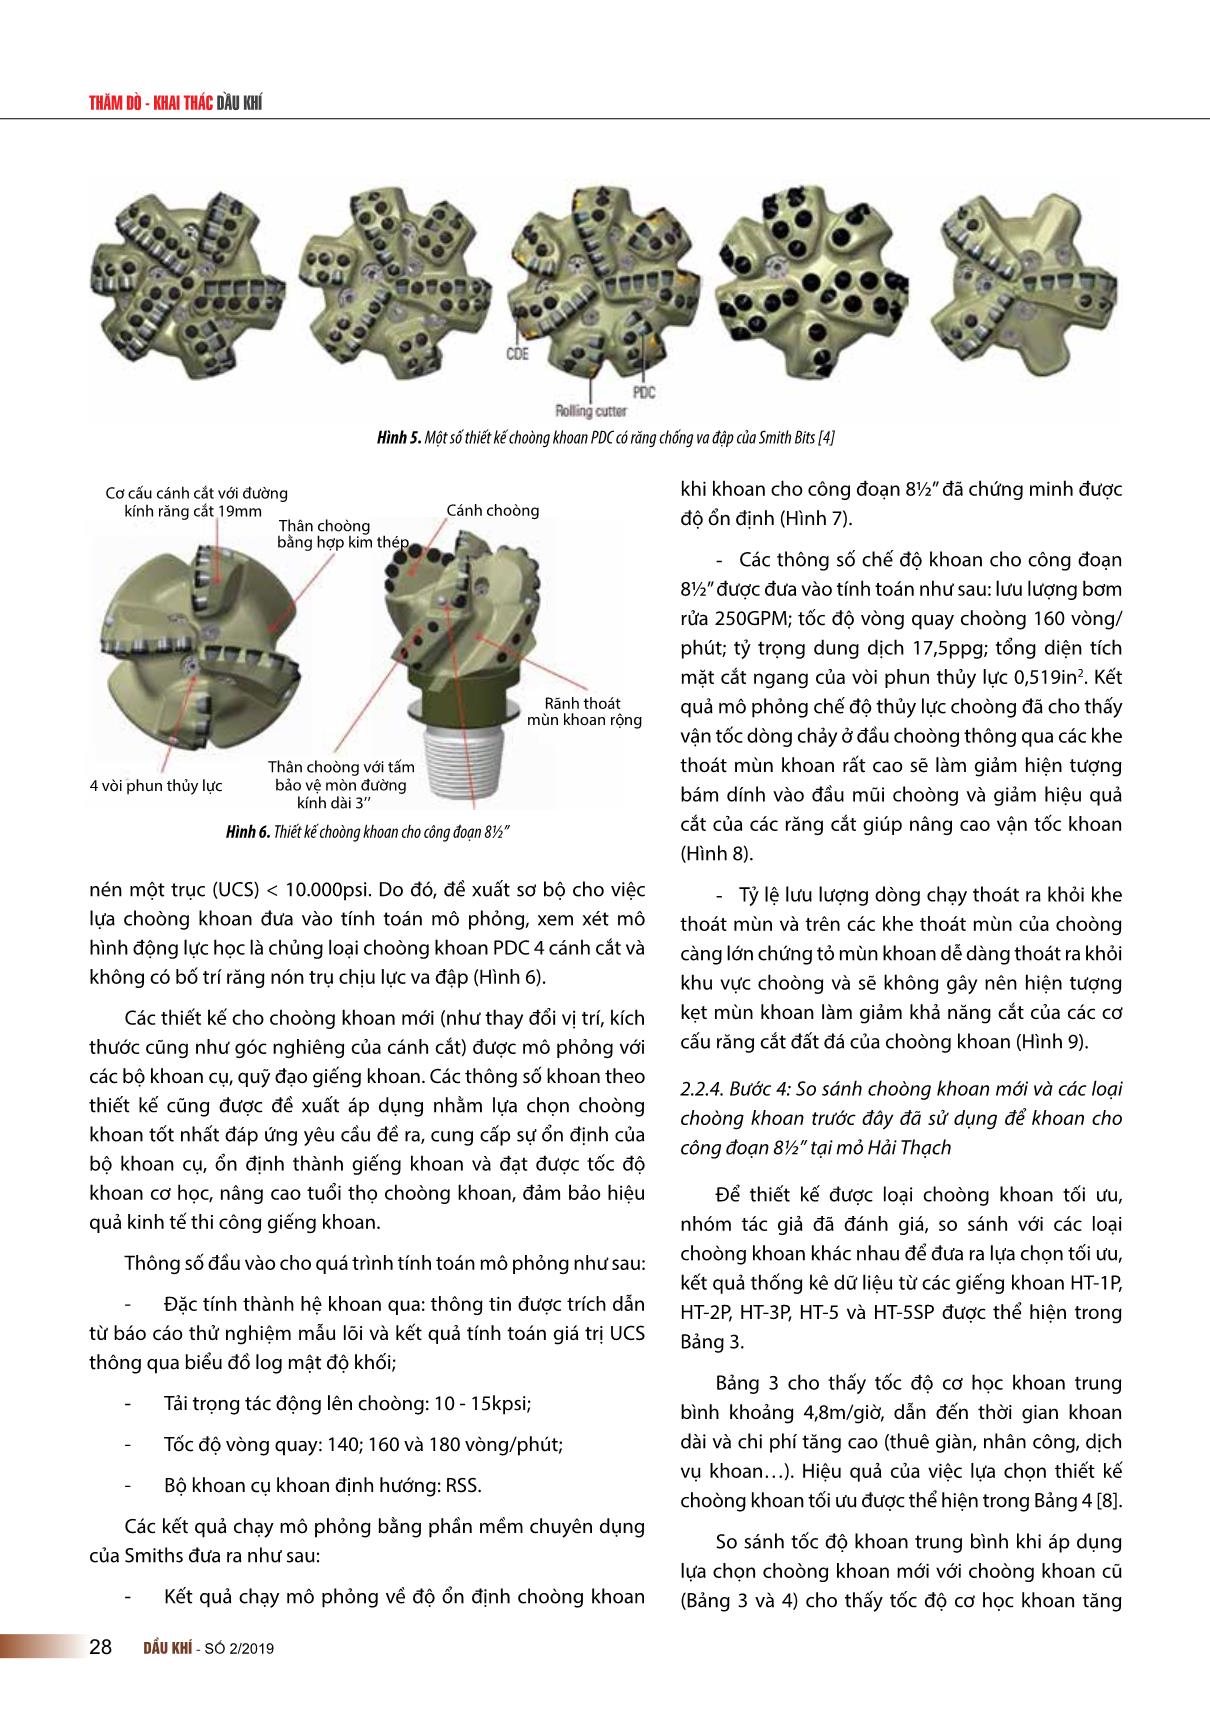 Lựa chọn thiết kế choòng khoan kim cương đa tinh thể (PDC) tối ưu cho công đoạn 8½” tại các giếng khoan nhiệt độ cao, áp suất cao mỏ Hải Thạch, bể Nam Côn Sơn trang 4